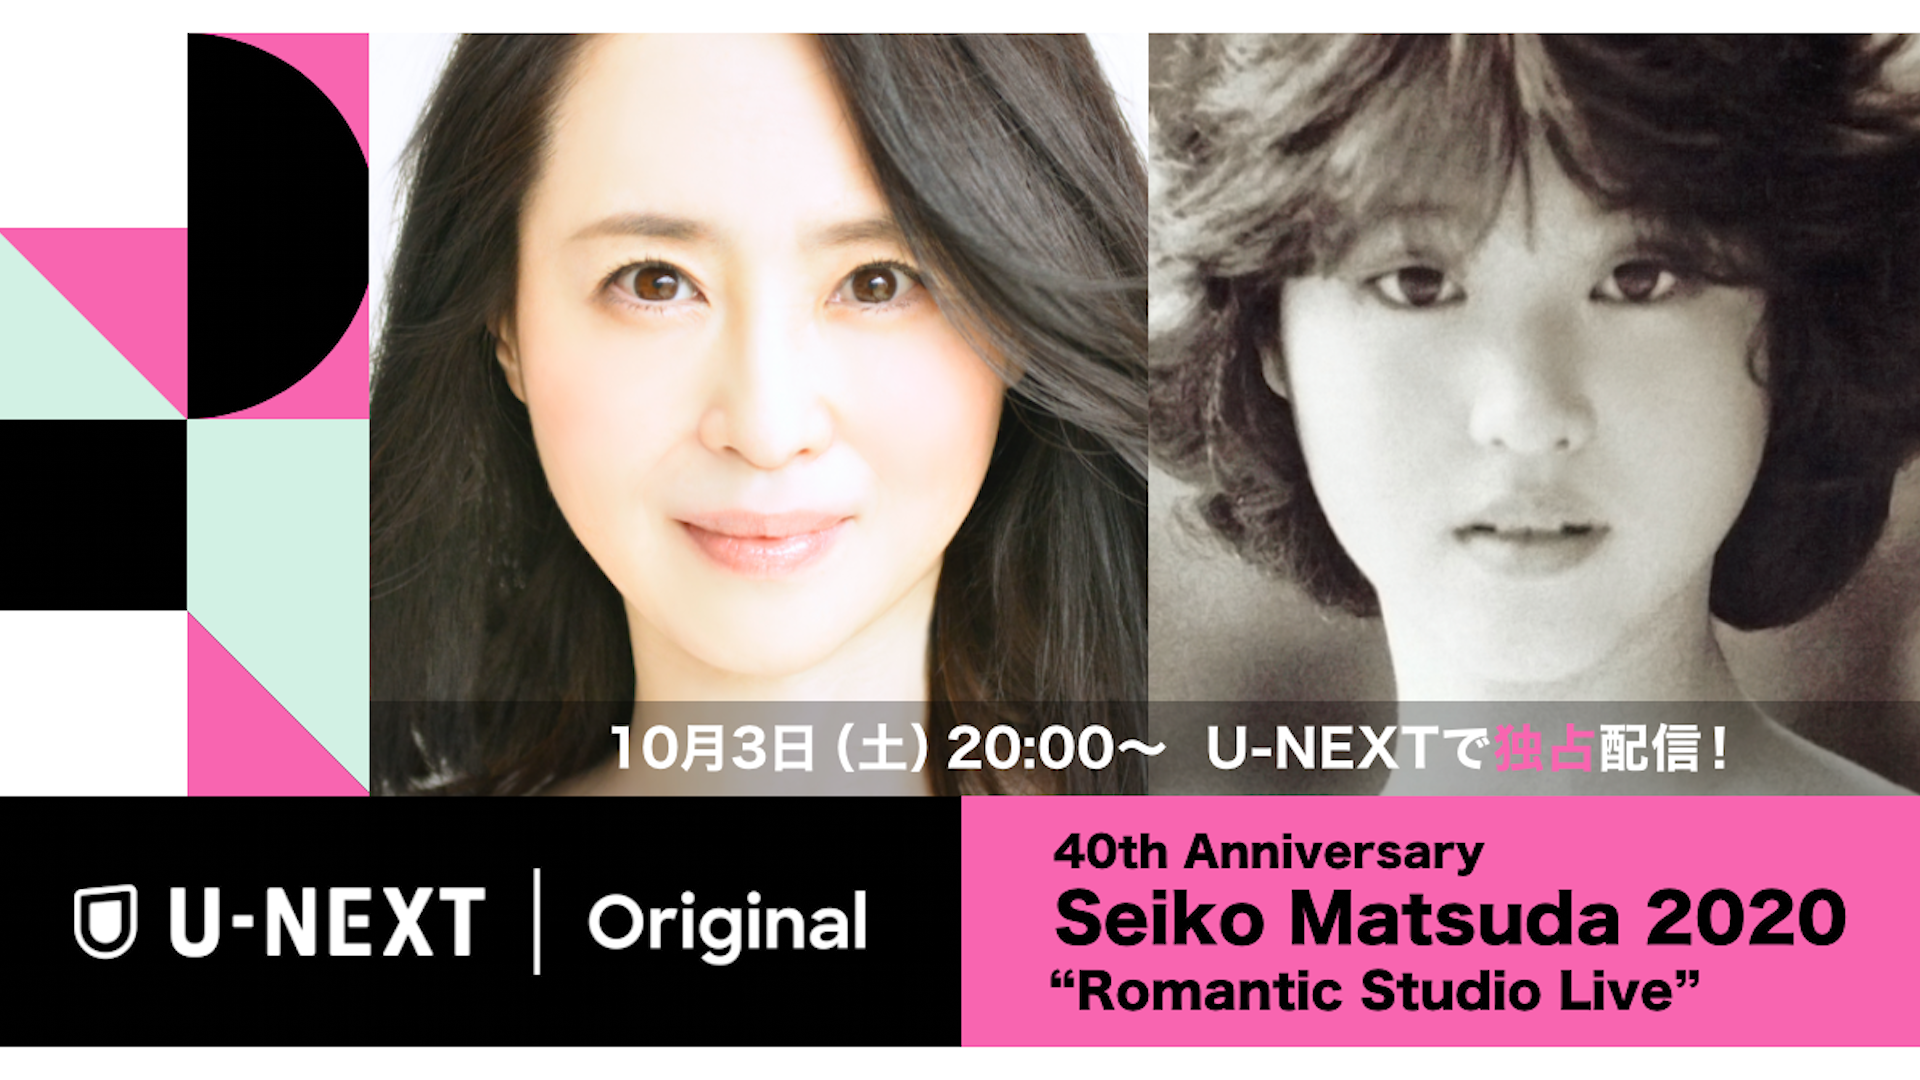 松田聖子 デビュー以来初となるライブ配信『40th Anniversary Seiko Matsuda 2020 Romantic Studio  Live』がU-NEXT独占で実施決定 | U-NEXT コーポレート